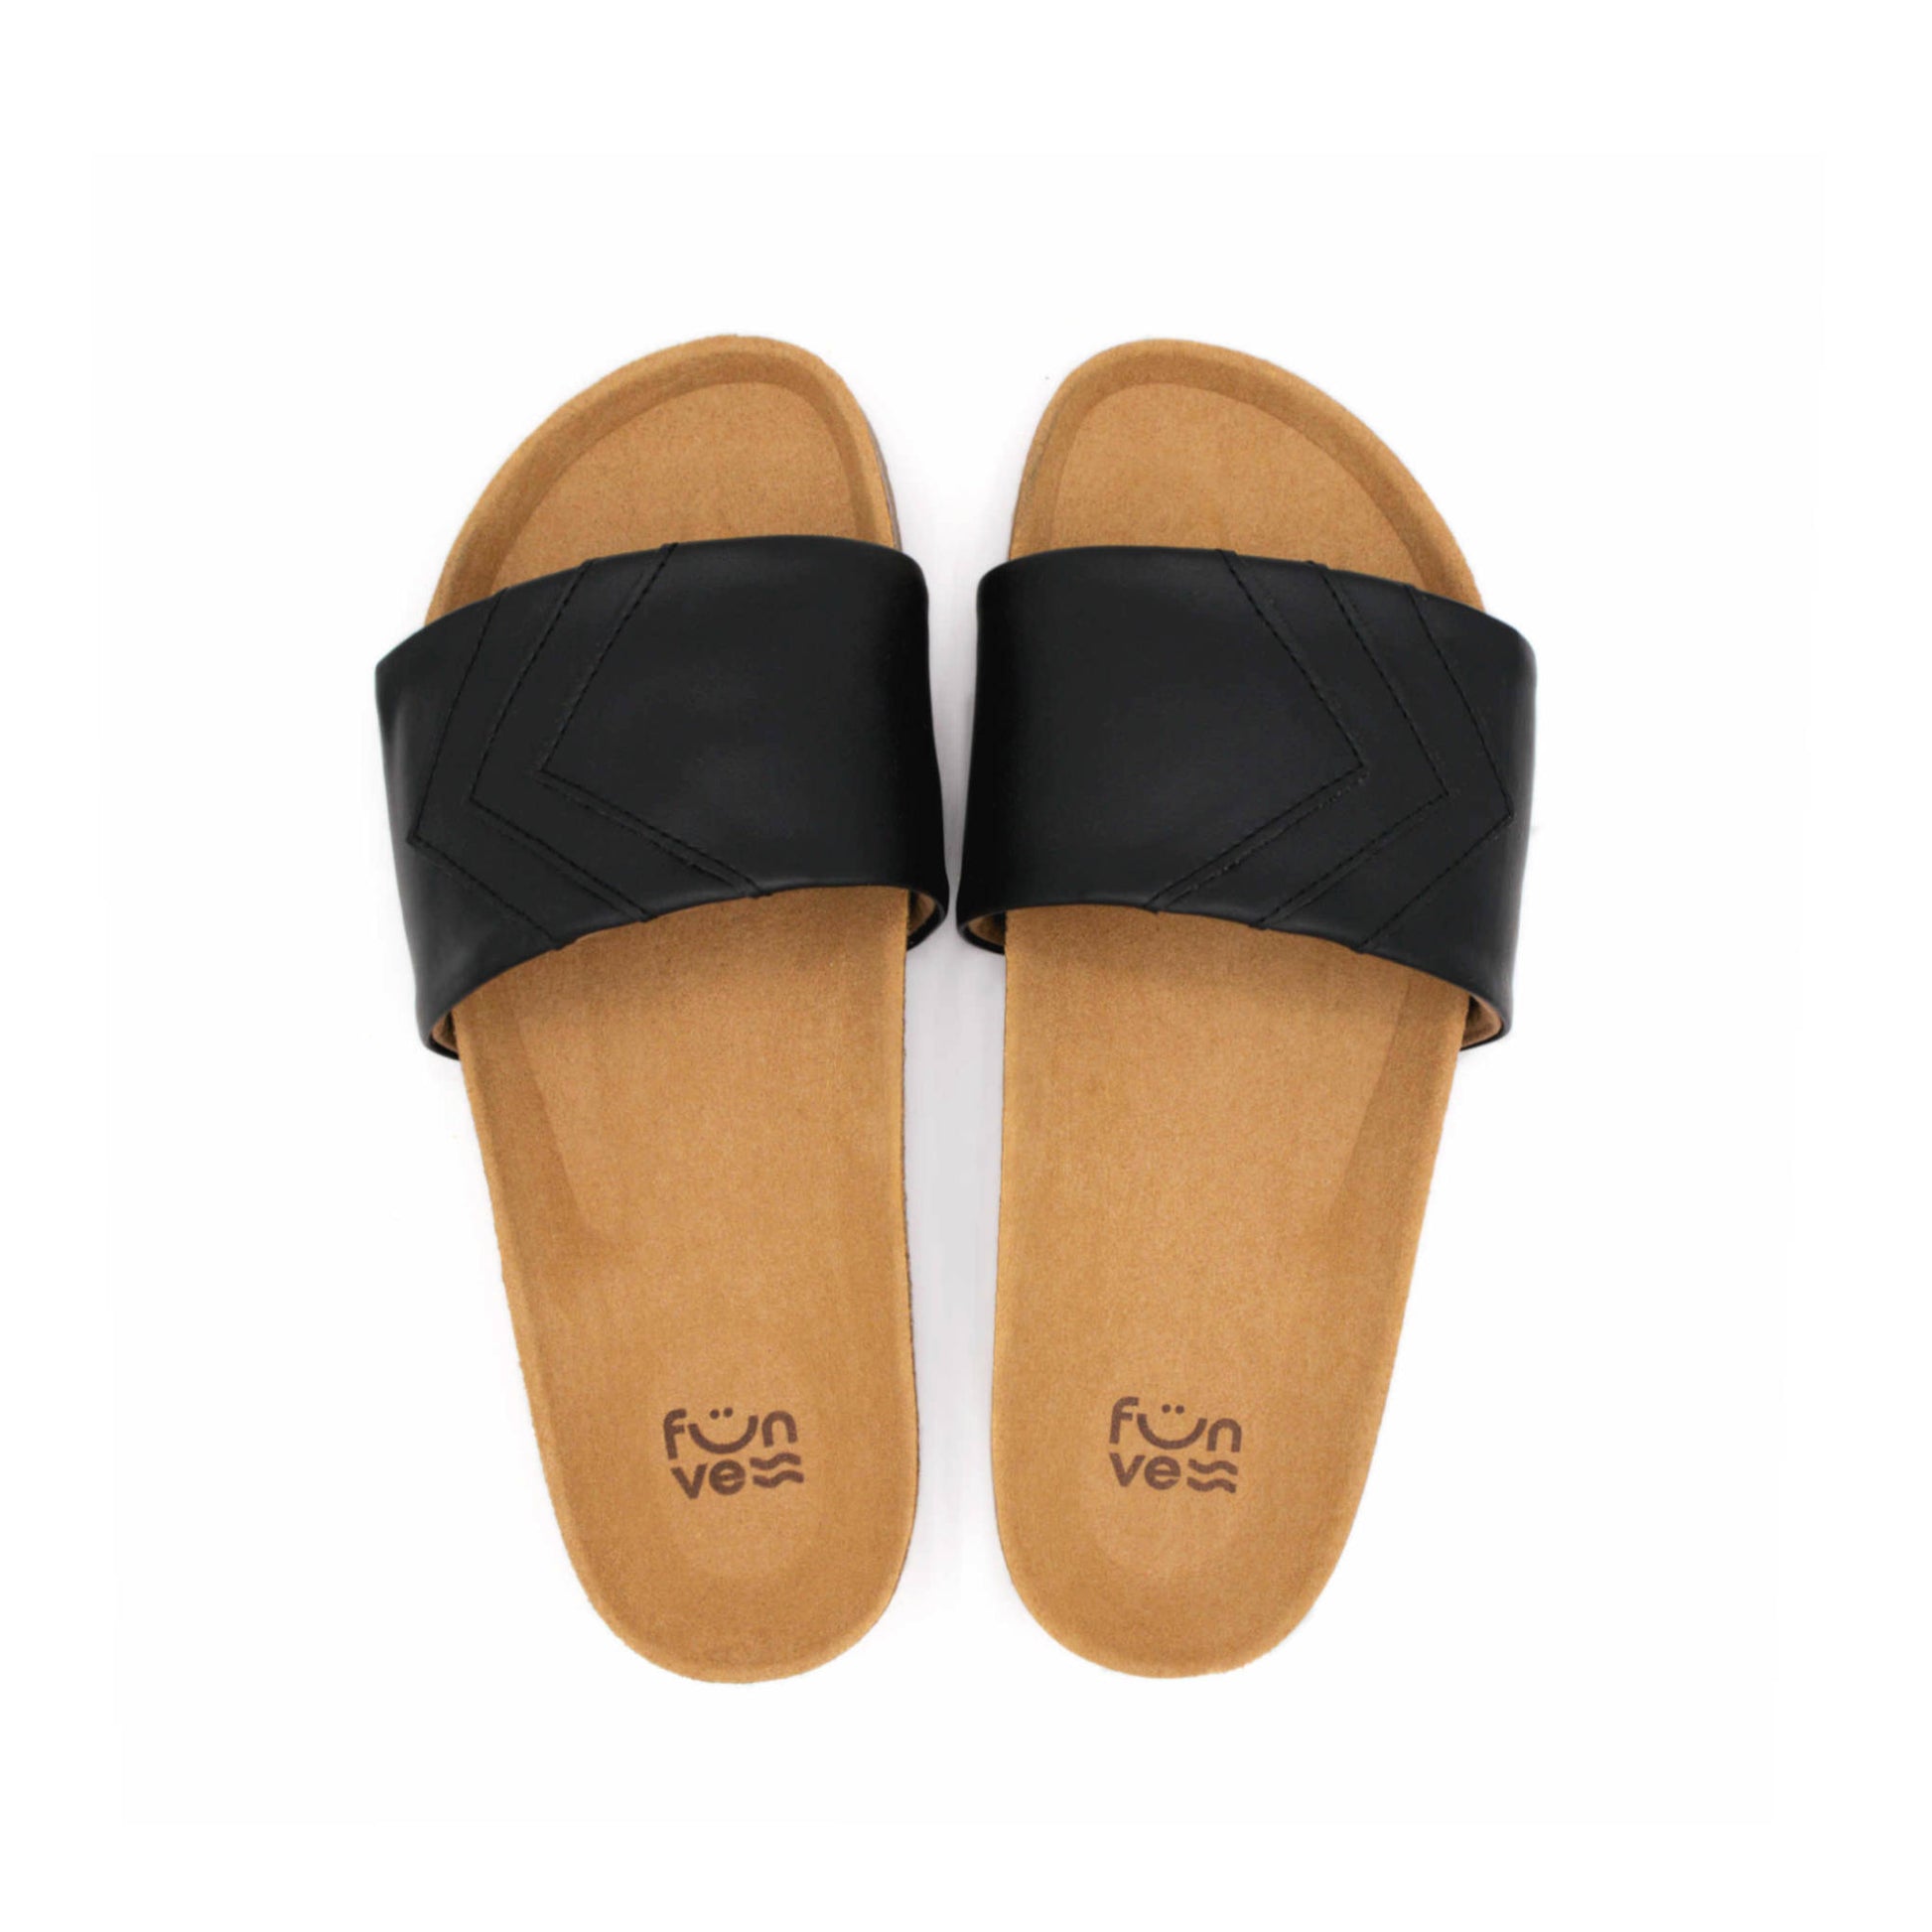 Schwarze Sandalen; vegan mit Fußbett; monochrom einfarbig; Marke Fünve; Modell Yin; Vogelperspektive